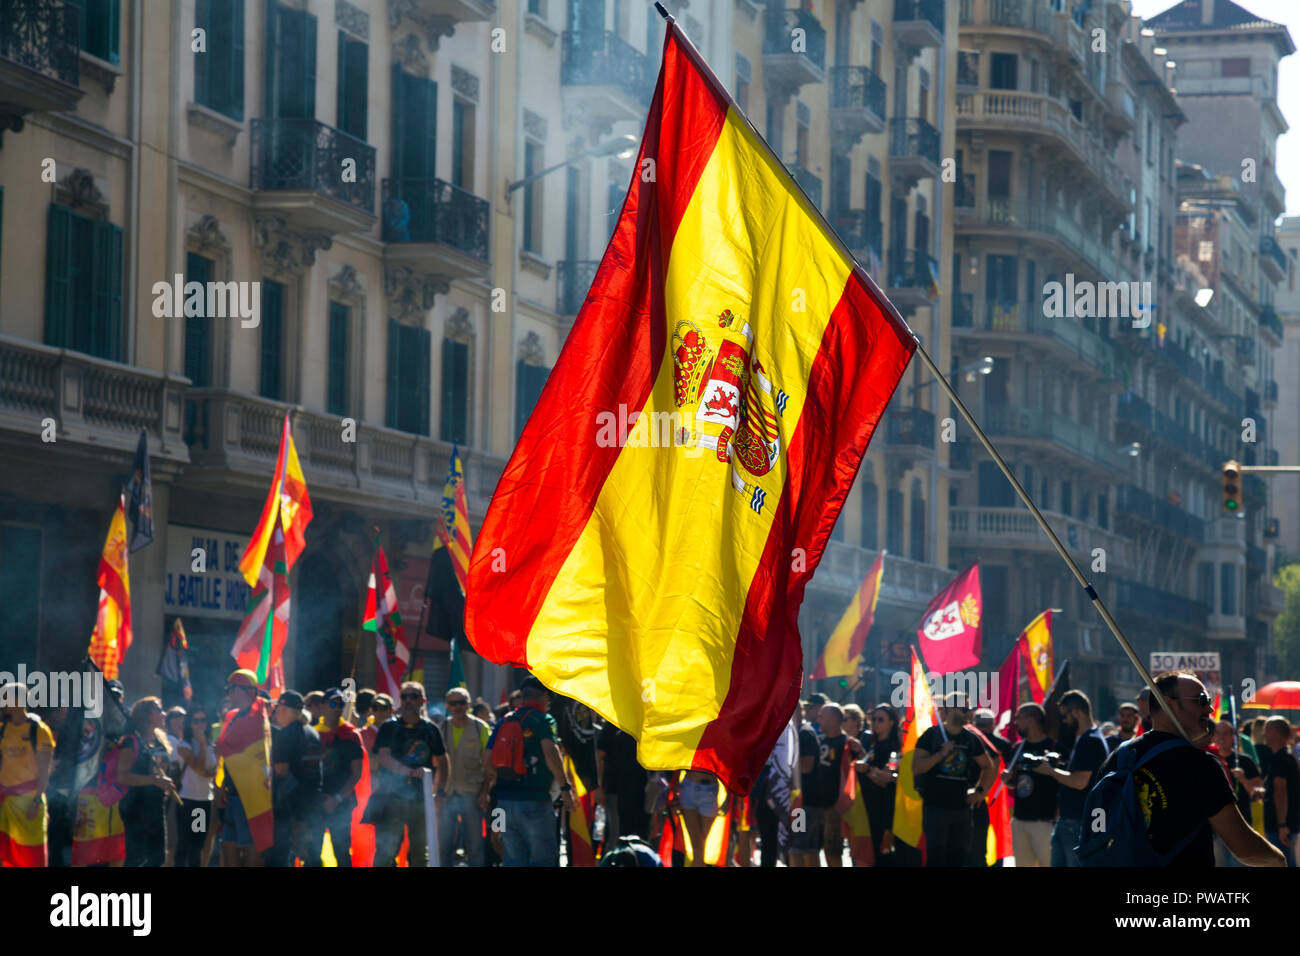 El 29 de septiembre de 2018, Barcelona, España - Catalán separatistas pro-independencia protestando en el centro de la ciudad Foto de stock